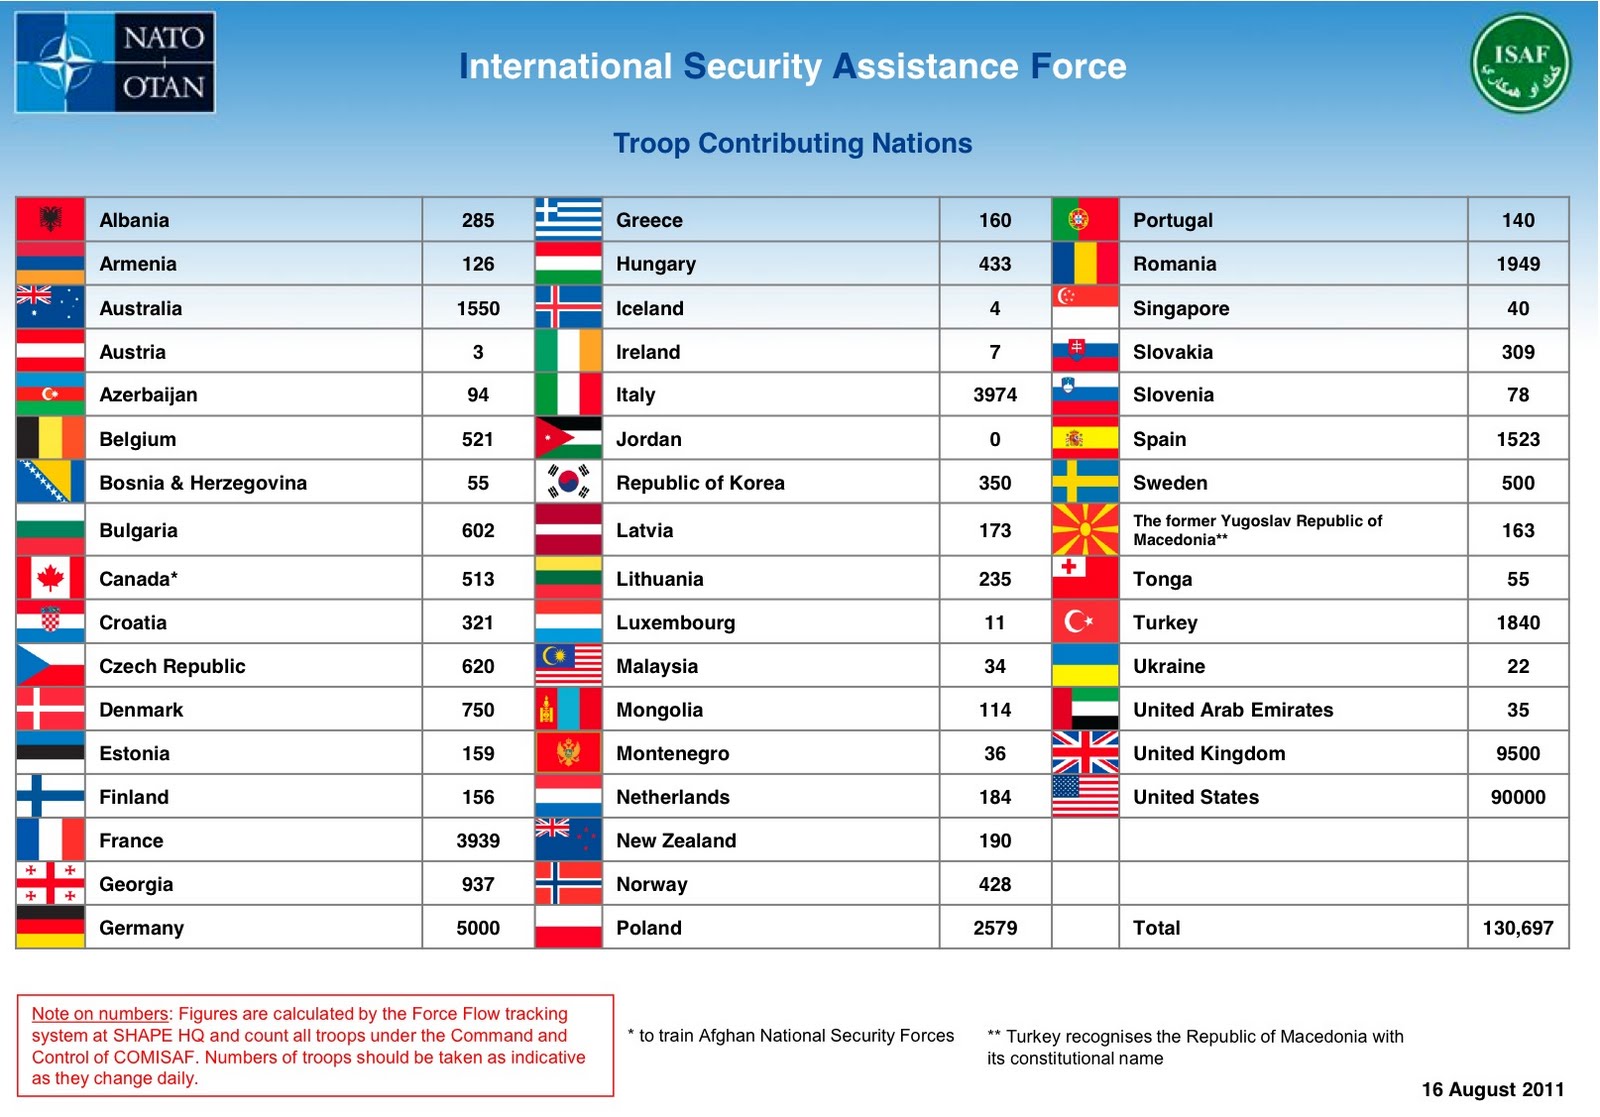 Нато состав государств. Страны входящие в НАТО таблица. Количество стран в НАТО. Список государств — членов НАТО. Страны НАТО список.